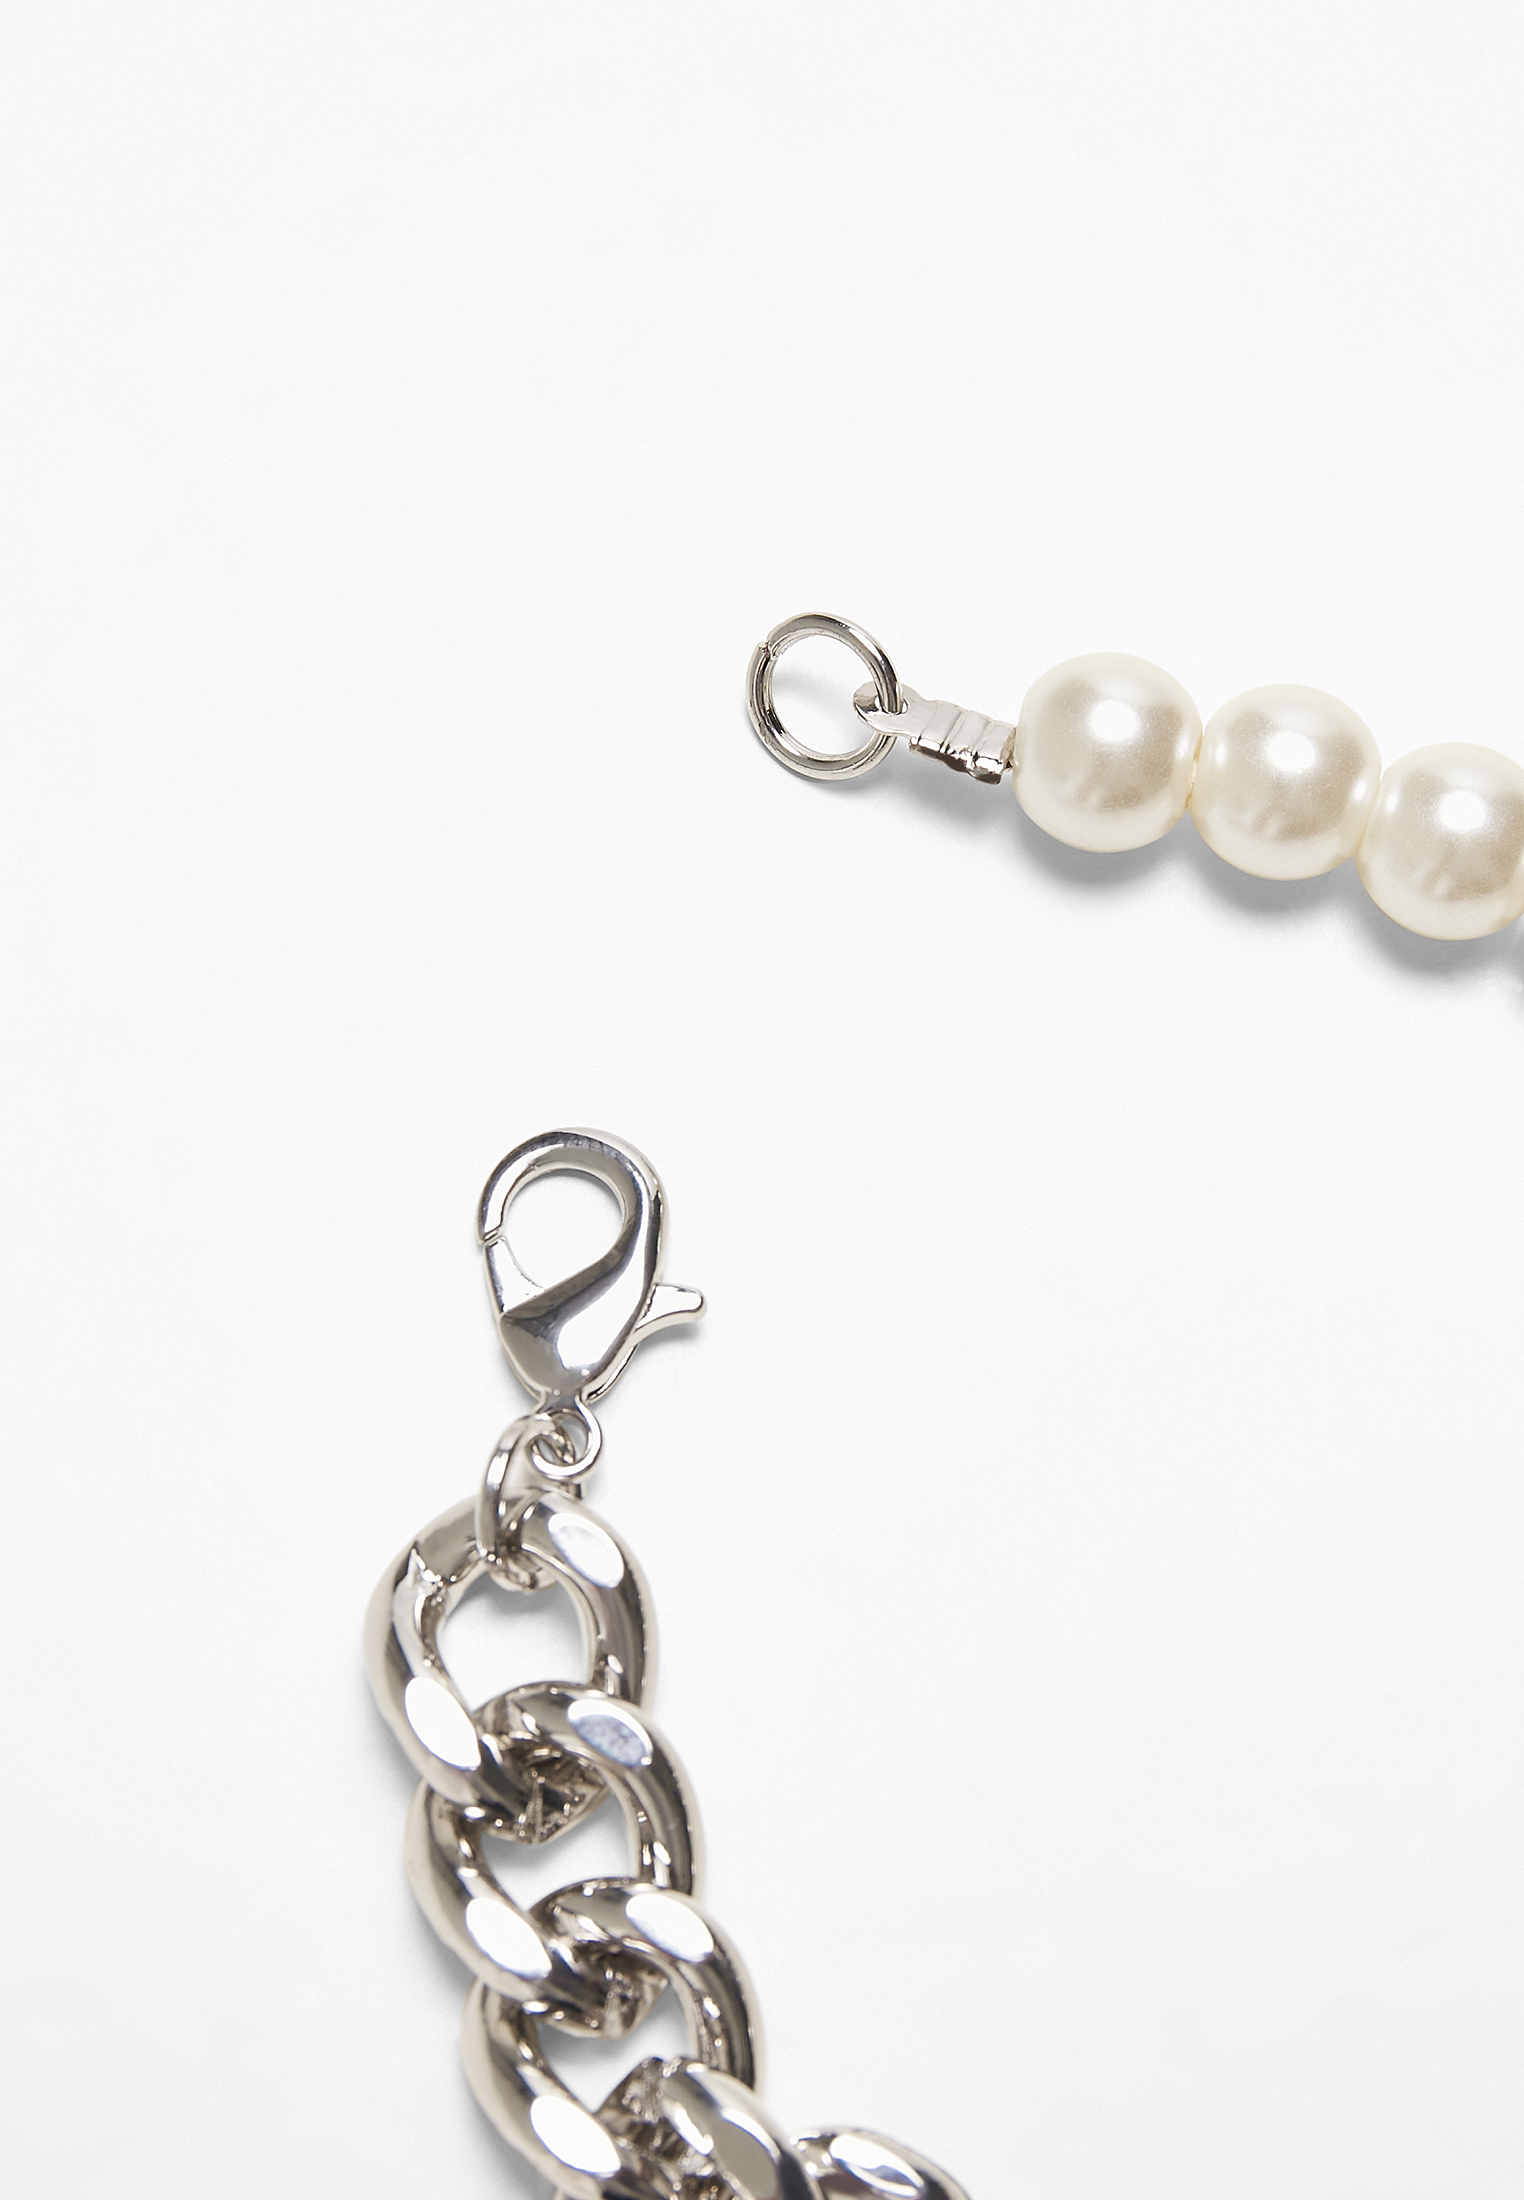 Schmuck Pearl Flat Chain Bracelet in Farbe silver